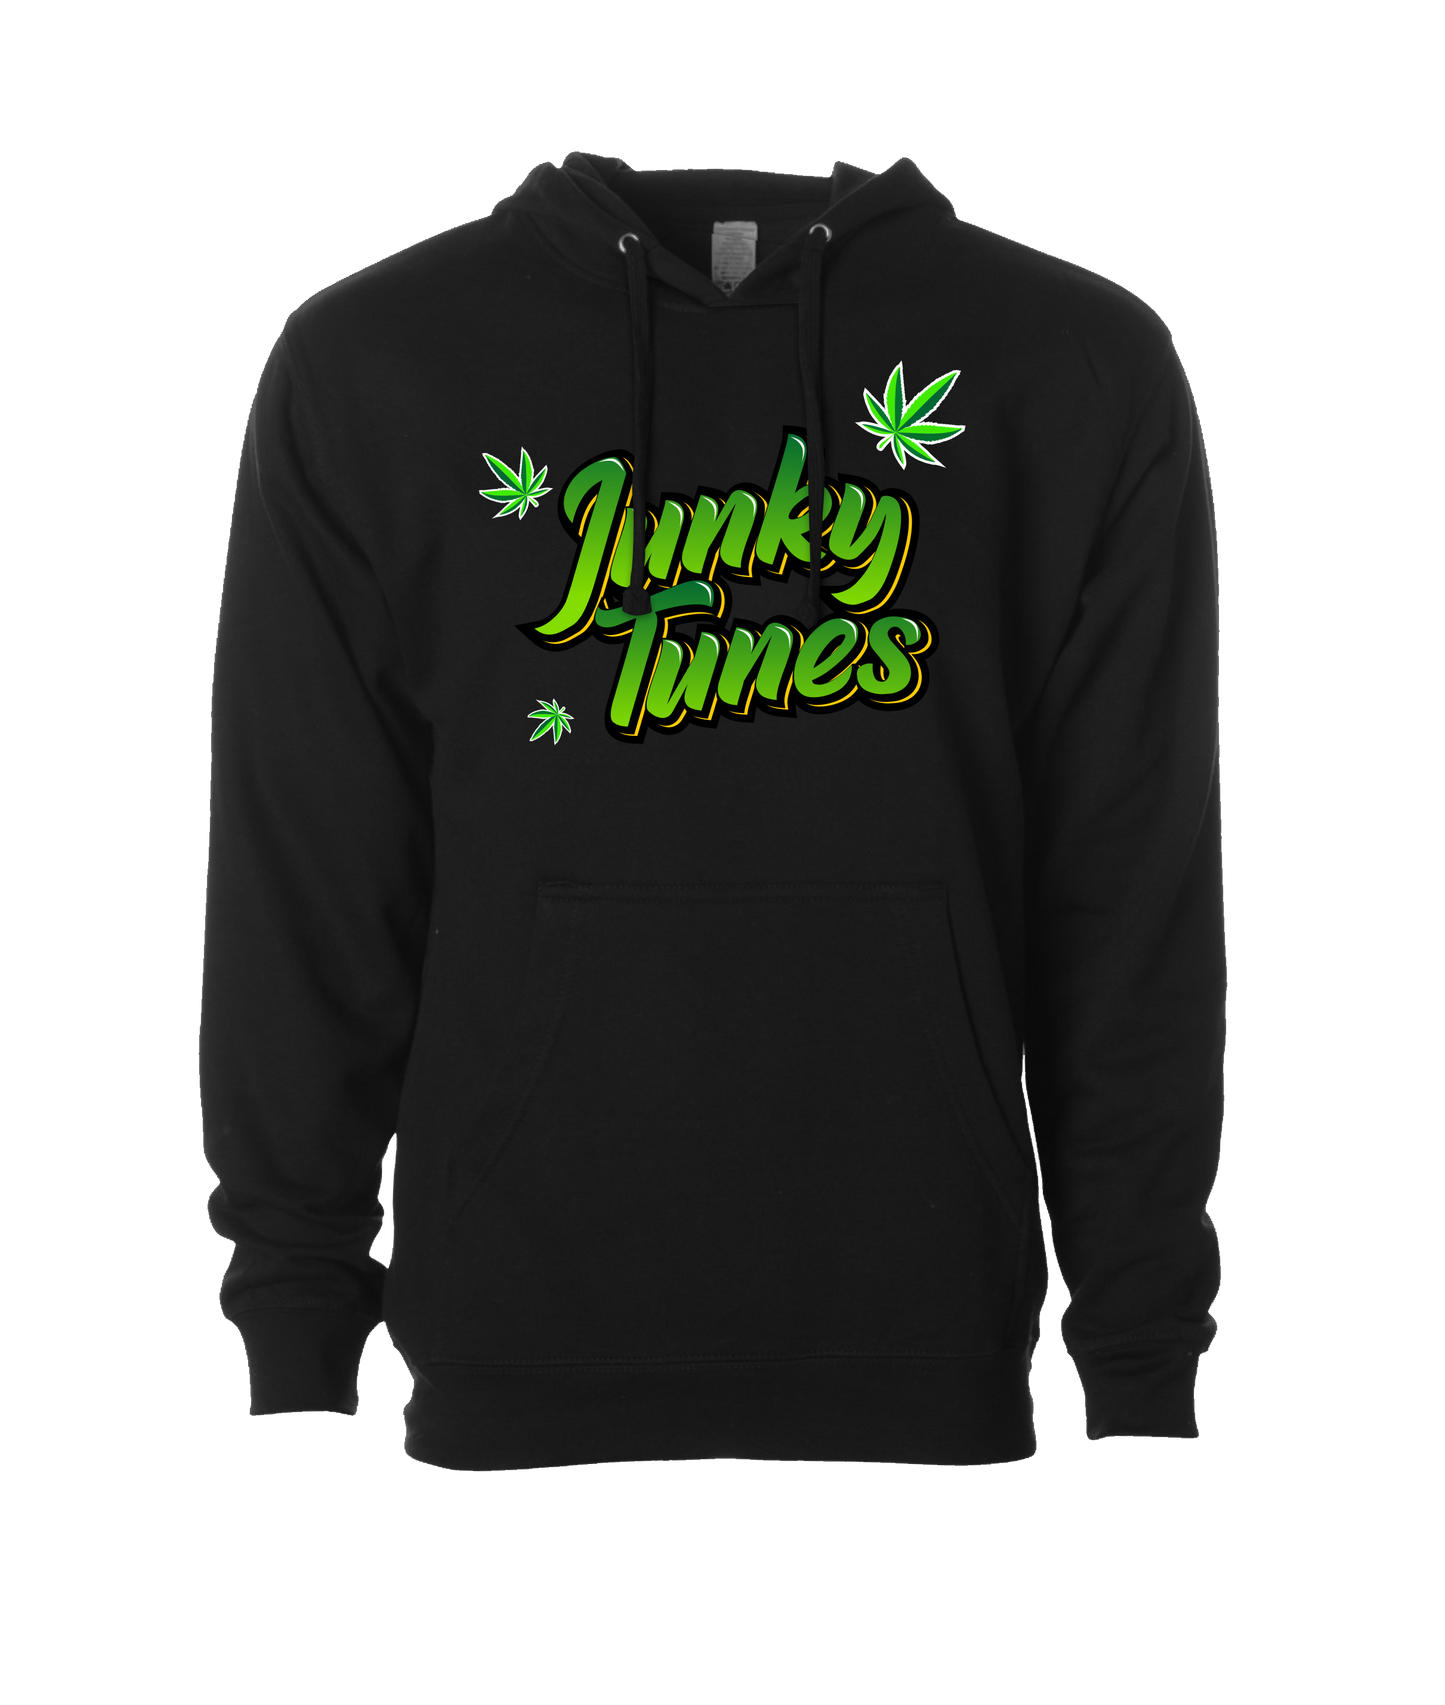 JunkyTunes - Logo Green - Black Hoodie